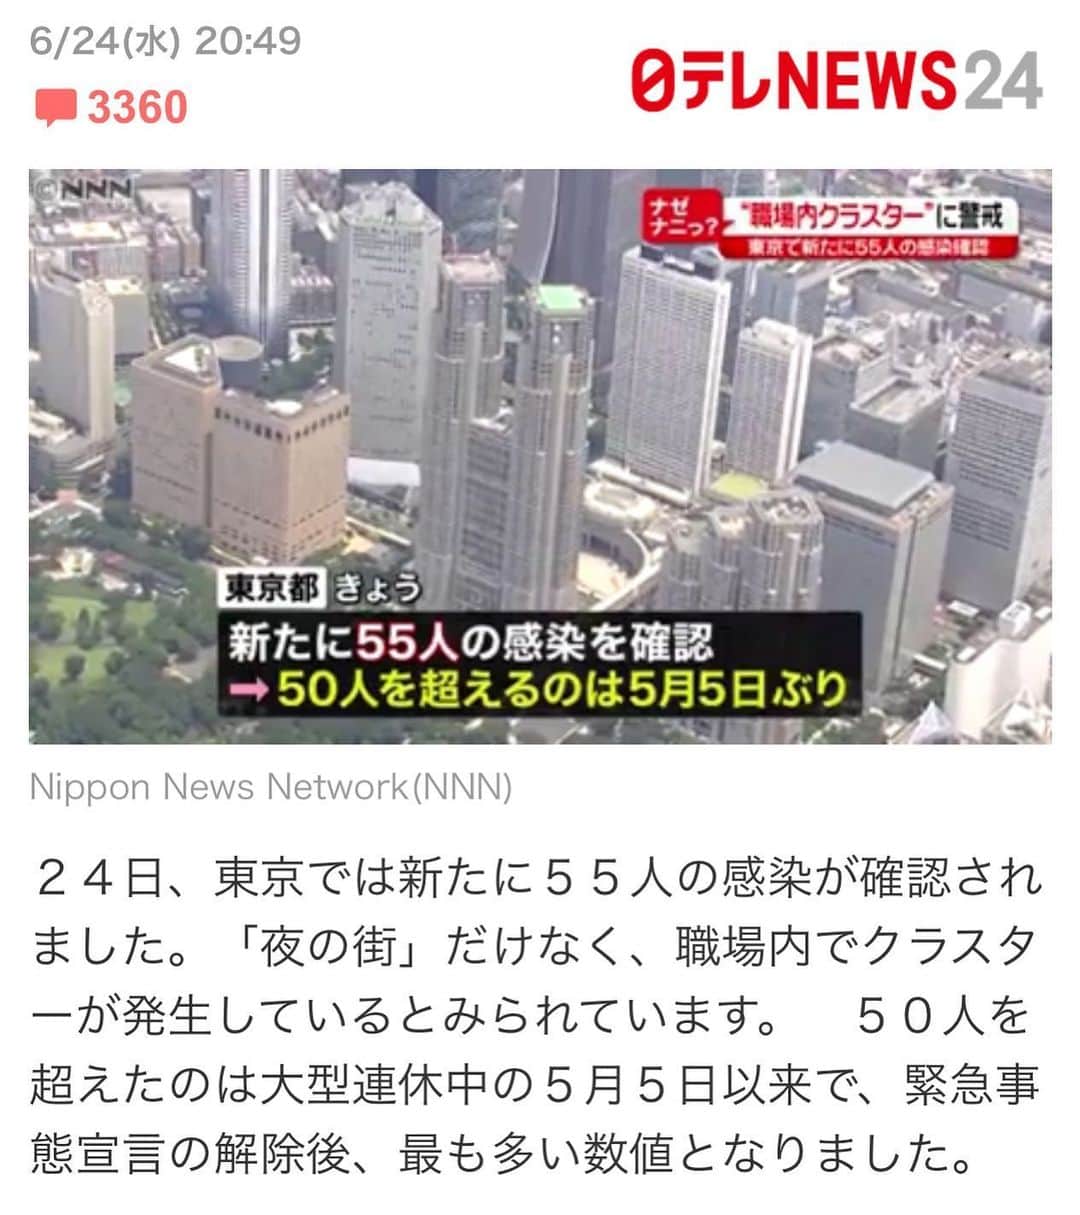 すみれのインスタグラム：「２４日、東京では新たに５５人の感染が確認されました。「夜の街」だけなく、職場内でクラスターが発生しているとみられています。　５０人を超えたのは大型連休中の５月５日以来で、緊急事態宣言の解除後、最も多い数値となりました。 ■「職場内クラスター」何が起こってる？  ５５人のうち１２人は、新宿区が行っているホストクラブなどの集団検査で判明しました。　他に、同じ職場で働く会社員の「職場内クラスター」の濃厚接触者が８人となっています。  小池都知事は２４日朝、「職場内クラスターがこのところ大変問題になっています」と話しました。  この職場とは、都内にある人材派遣会社で、仕事内容はデスクワークに近い仕事です。　ここで２３日までに７人の感染が判明していて、保健所が、クラスターが起きたとして同僚など濃厚接触者を調査していました。そんな中、２４日に新たに８人が追加されました。  在宅勤務のケースが減り、顔を合わせて仕事をする人も増えてきている中で、一般的なオフィスでの対策をしっかりしないと大変なことになるという事例です。  また東京都は、都立の特別支援学校の５０代の男性教員が感染したと発表しました。この男性教員が指導した生徒１１人と、同僚の教職員１６人のあわせて２７人は、濃厚接触者にあたるとして自宅待機に。教員が担当するなどしていた１学年については、６月２４日から７月３日まで臨時休校としました。２１日にも、別の都立の特別支援学校に勤める３０代の女性教員の感染が確認されています。 「東京アラート」は先週金曜日で終了しています。東京アラートはなくなっていますが、第二波に備えて新しい指標と都民への告知方法を発表する予定だということです。 ■ＴＤＲは７月１日再開　しかし年パス使えず  心配な状況は続きますが、各地で続々と施設が再開しています。  東京ディズニーランドと東京ディズニーシーは、７月１日に再開することになりました。ただ、感染予防のため多くの制約があります。  当面は、 ・入園者数は通常の５０％以下 ・パレードやショーは休止 ・キャラクターとふれあえる施設も休止 となります。  代わりに、ステージや船の上などからソーシャルディスタンスを確保した上で、キャラクターが挨拶をしてくれる機会が設けられるということです。  他にも、オンラインで日付指定のチケットを事前購入した人のみ入園可能となります。予約は明日から受け付けを開始し、チケットは１か月先まで先着順での購入になります。  当面、年間パスポートは使えないということです。　年間パスポートは期間内であればディズニーランドでもディズニーシーでも遊び放題の券で、値段は約１０万円します。 この年パスを持っていてもチケットを買わなければならない、というケースも出てきます。年パスに関しては、有効期限の延長や払い戻しだけでなく、年パスを持っている人を対象に抽選で入園できるシステムを導入するとのことです。 ■横浜「ニュウマン」は午前の入場が要予約に 新たに開業した施設でも独自の対策が取られています。  ２４日、横浜駅と直結した「ＪＲ横浜タワー」の複合施設が開業しました。　雑貨店、映画館や飲食店などが入っていて、屋上には横浜港などが見渡せる「うみそらデッキ」というものがあります。観光スポットにもなりそうですが、密を避けるため当面は使用できないということです。　 また、商業施設の「ニュウマン」に入るには、６月２８日までは午前はＨＰから予約が必要。午後は入場規制があるということです。 ■上野動物園は密対策で「全員パンダ舎へ」  上野動物園も“新たな楽しみ方”を導入して２３日から再開しました。　 入園できるのは、インターネットや電話で事前に整理券を取得した人のみです。　平日でも１日約１万人以上が来園しますが、６月は１日４０００人を上限にしています。  また、混雑を避けるため、入園する人は全員パンダ舎の前を通ってもらうということです。 入園さえ出来れば改めて並ばなくても３歳になったばかりのシャンシャンにも会えるということです。ただ、密を避けるため、立ち止まったり写真・動画の撮影はＮＧということで、ここを通れるのも１回だけです。 ■星野リゾート　スマホで「３密見える化」  宿泊施設も工夫しています。  全国で温泉などの宿泊施設を展開する星野リゾート。　 一部の施設では６月からスマートフォンで温泉や大浴場の混雑状況が事前に分かる「３密見える化サービス」を始めたそうです。  部屋でスマホをチェックして、空いている時間が分かるため、好きな時間に入ってください、ということです。  施設が再開すると日常が戻ってくるようで励みにもなります。利用する側も管理者側の感染対策をきちんと理解して、気持ちよく楽しみたいですね。」